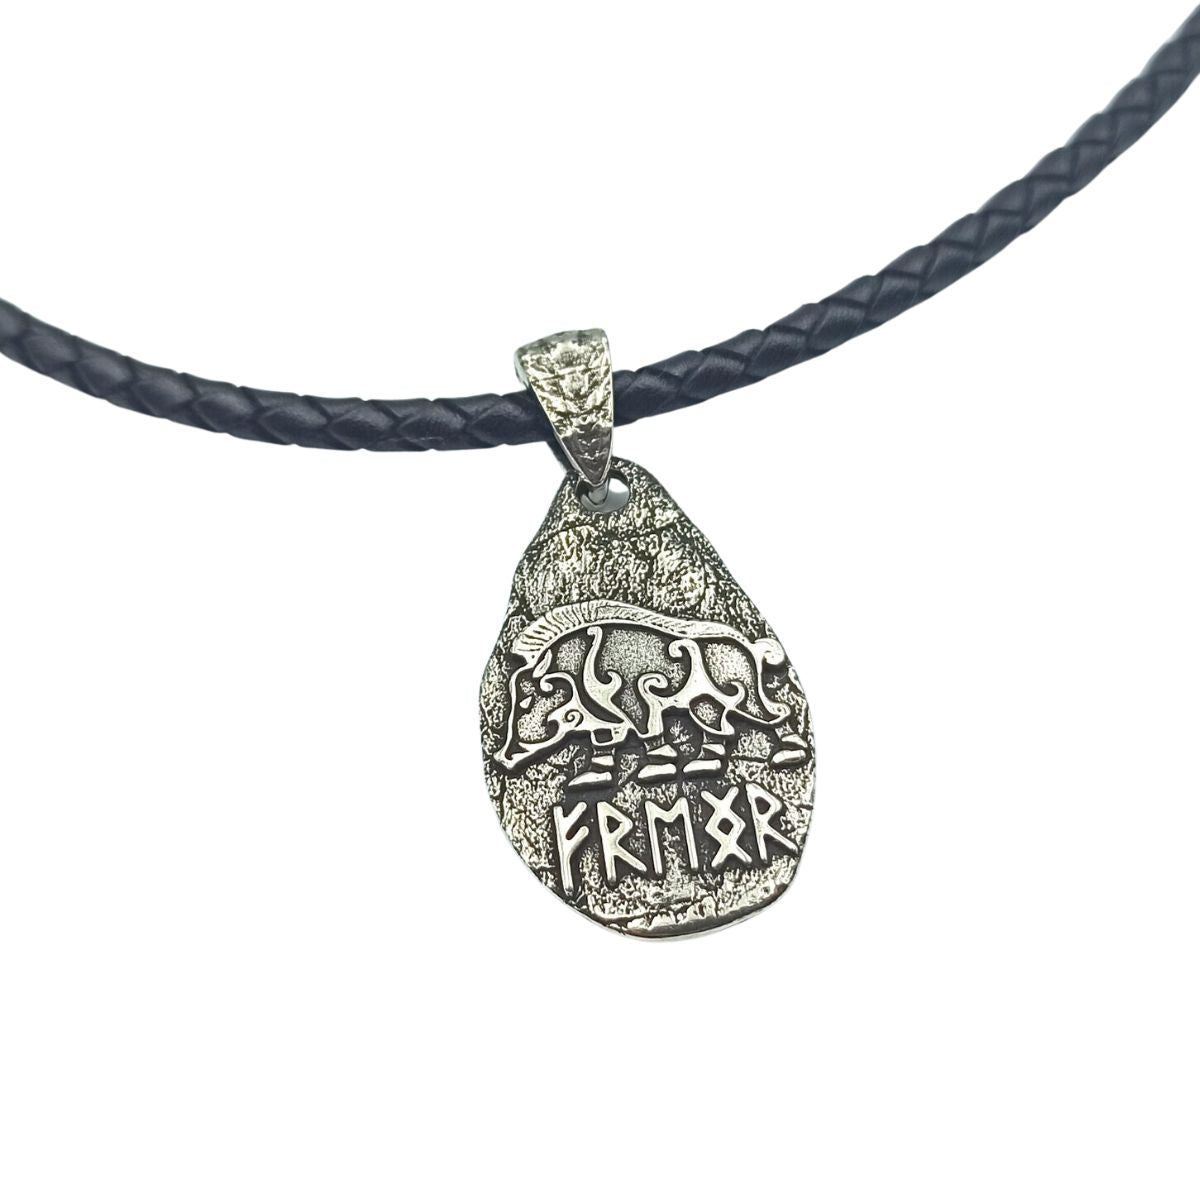 Freyr boar silver pendant